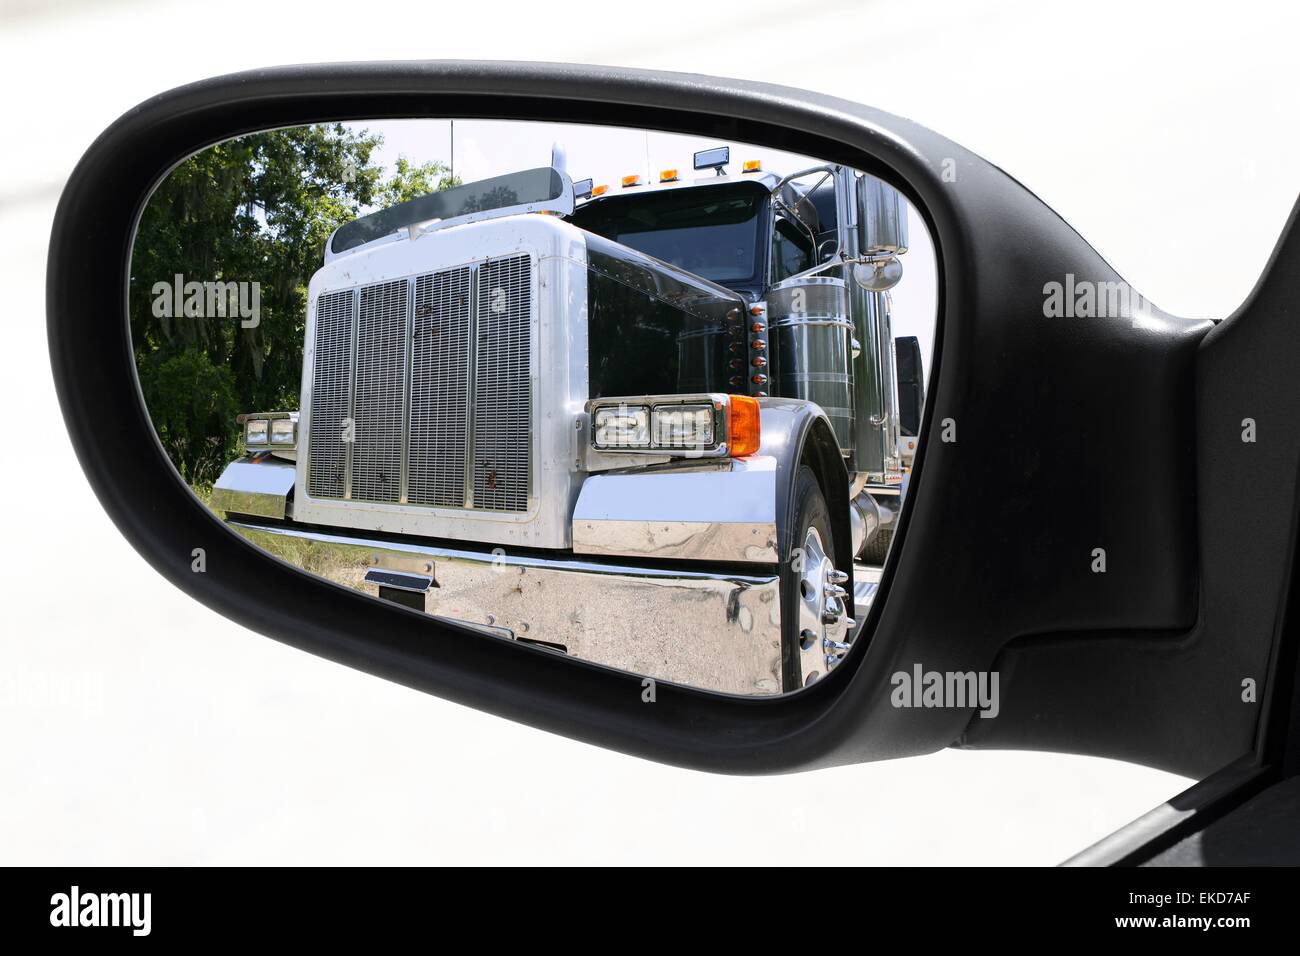 https://c8.alamy.com/compes/ekd7af/espejo-retrovisor-coche-adelantar-un-camion-grande-ekd7af.jpg